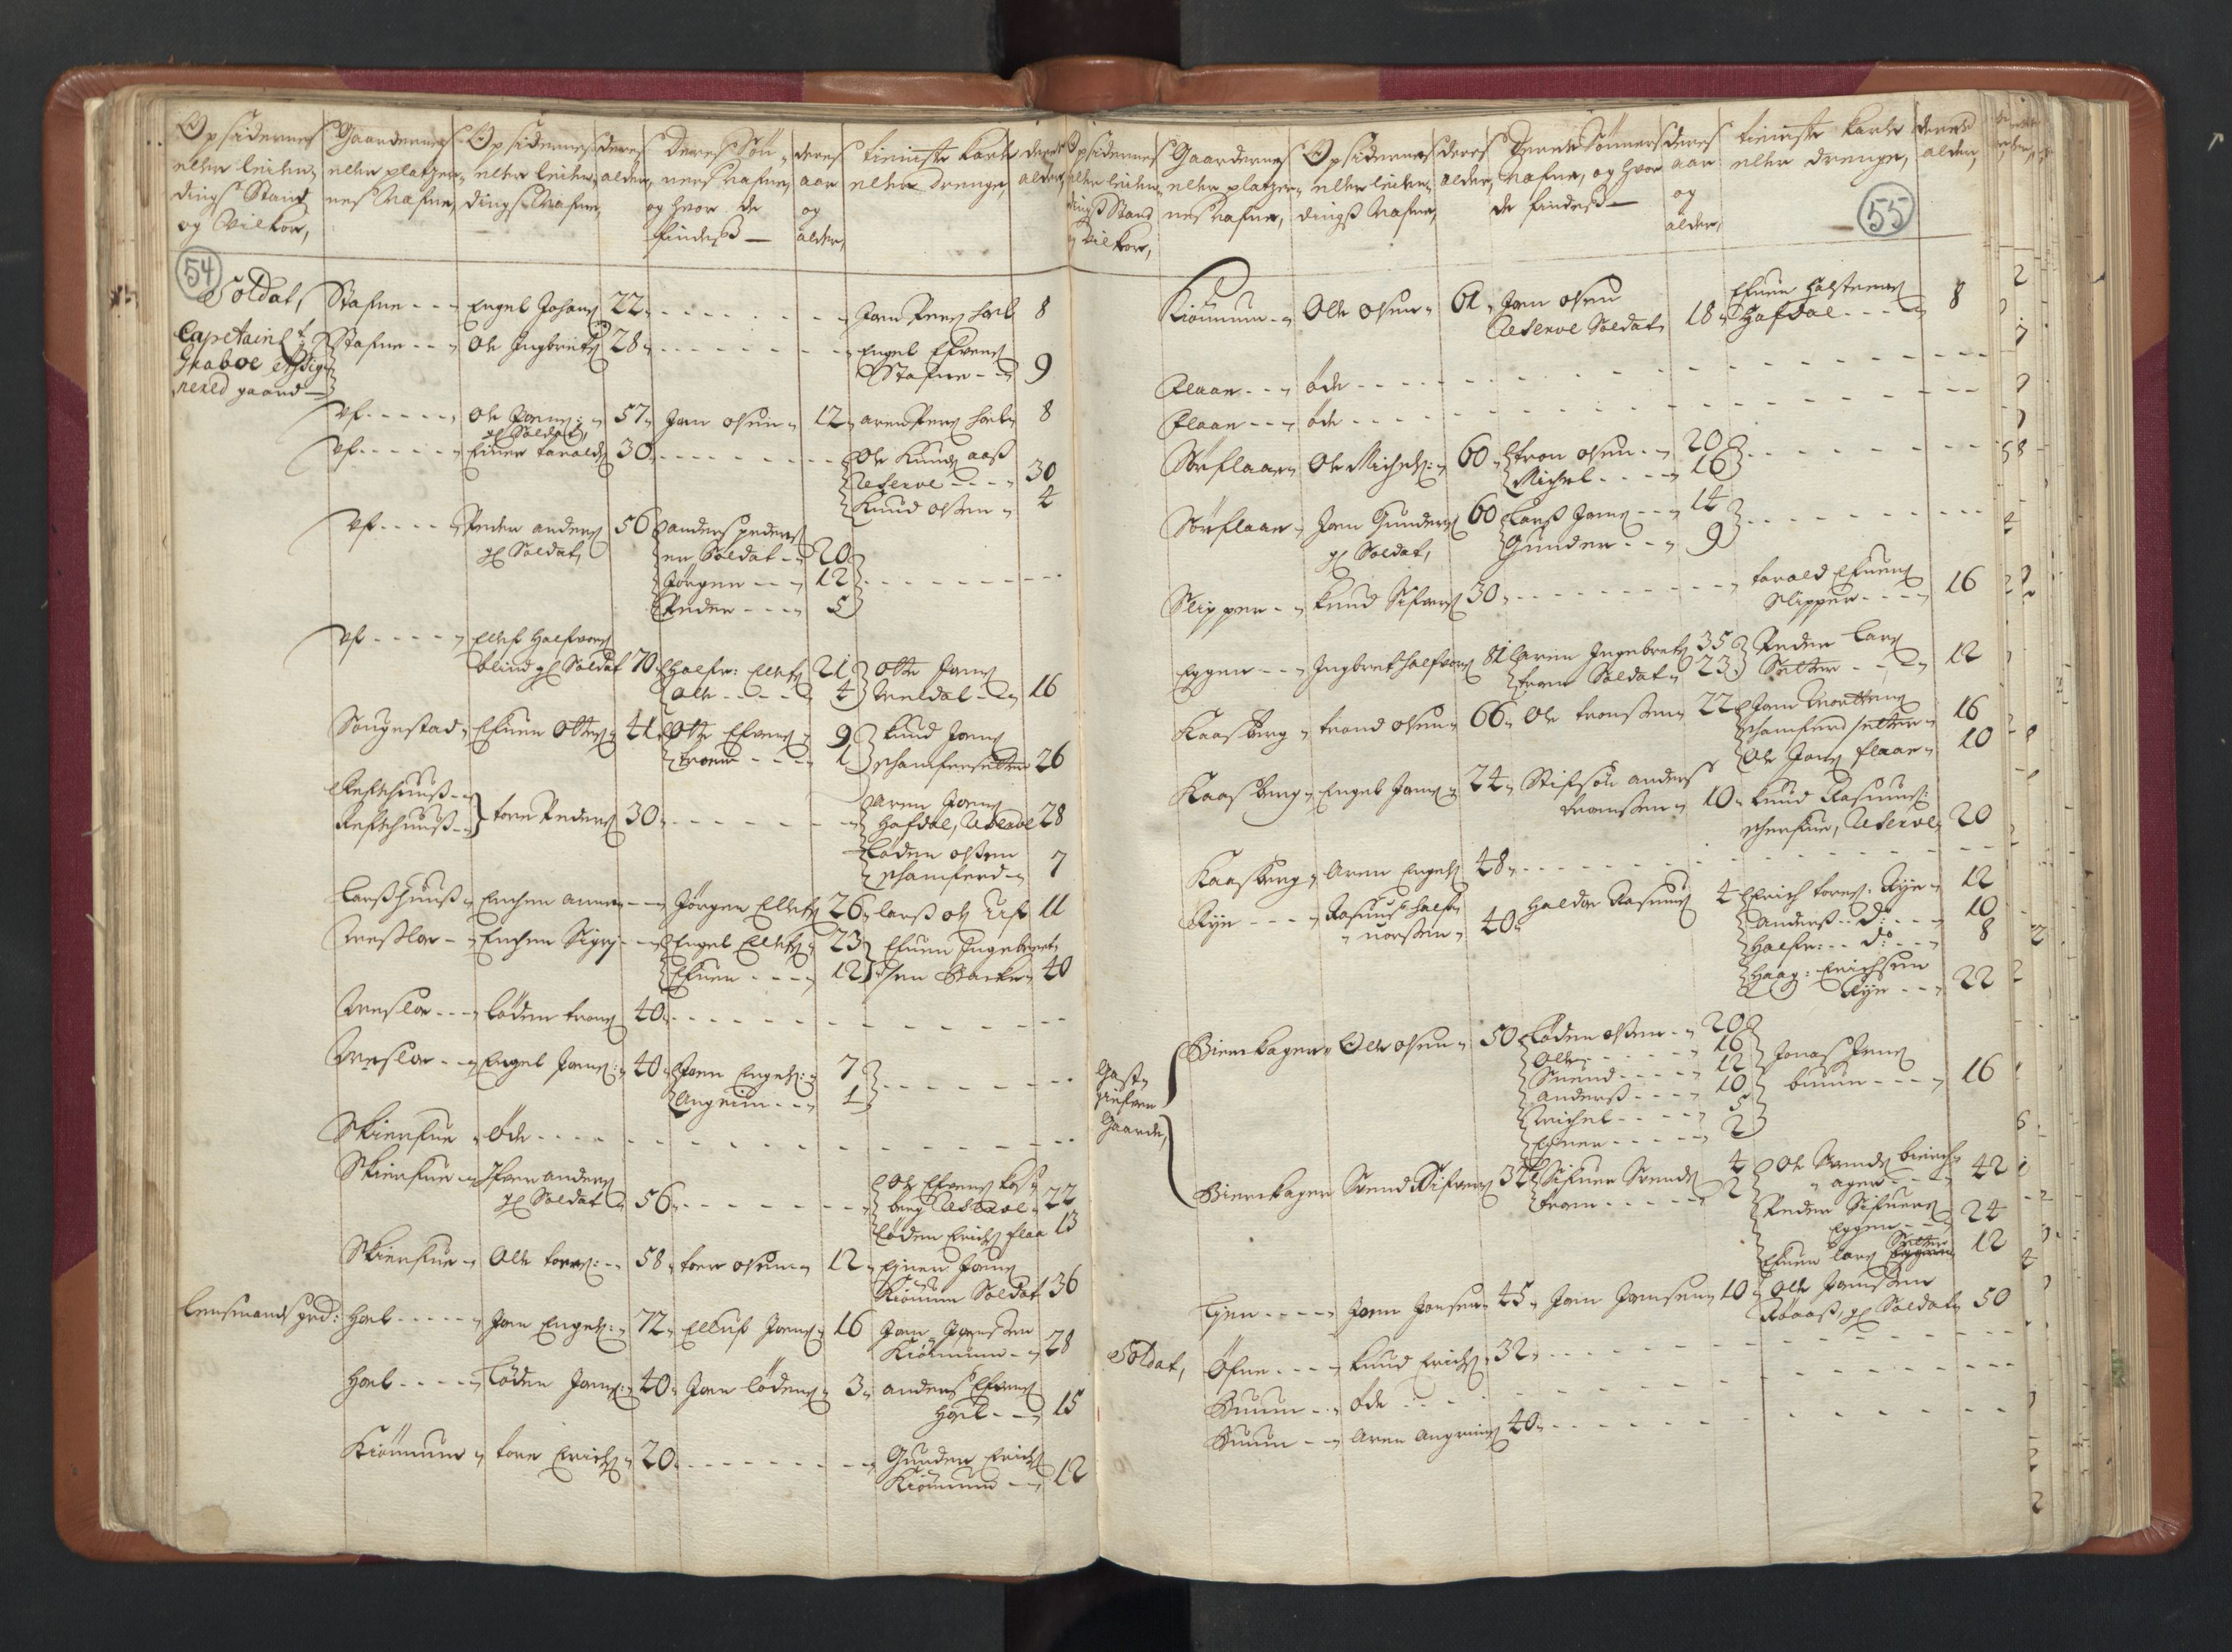 RA, Manntallet 1701, nr. 13: Orkdal fogderi og Gauldal fogderi med Røros kobberverk, 1701, s. 54-55